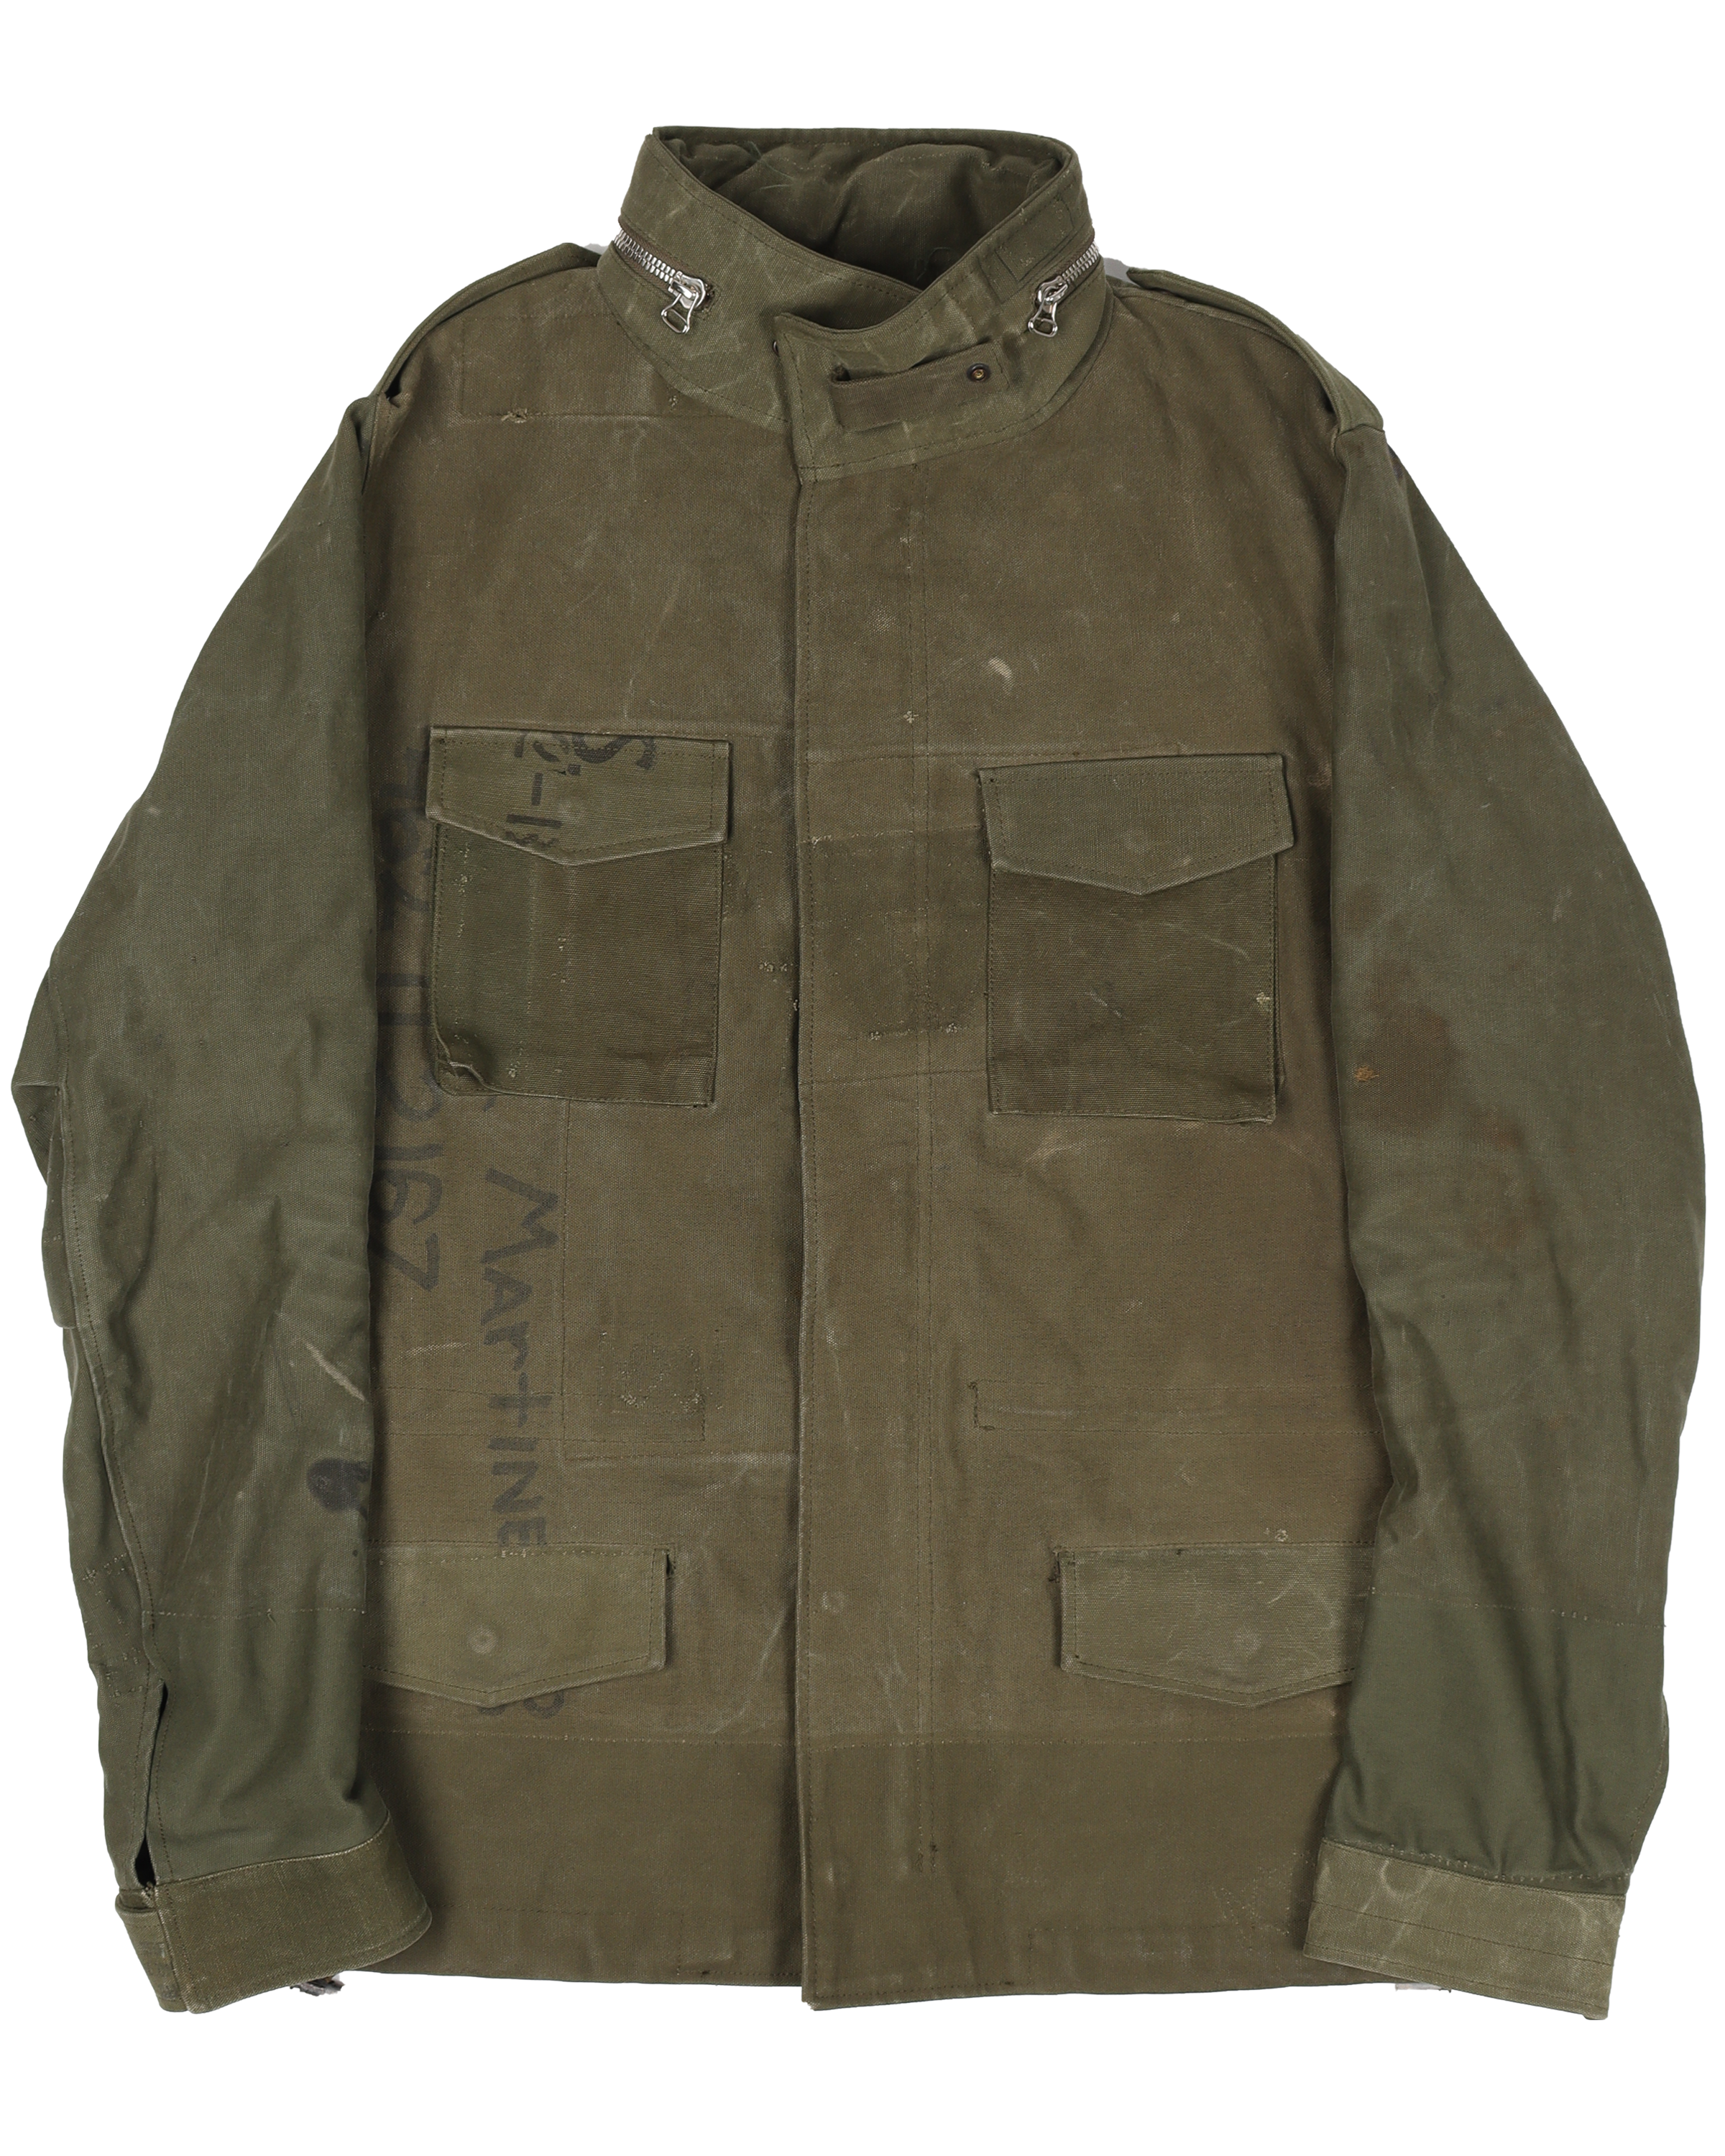 ReadyMade Military Jacket